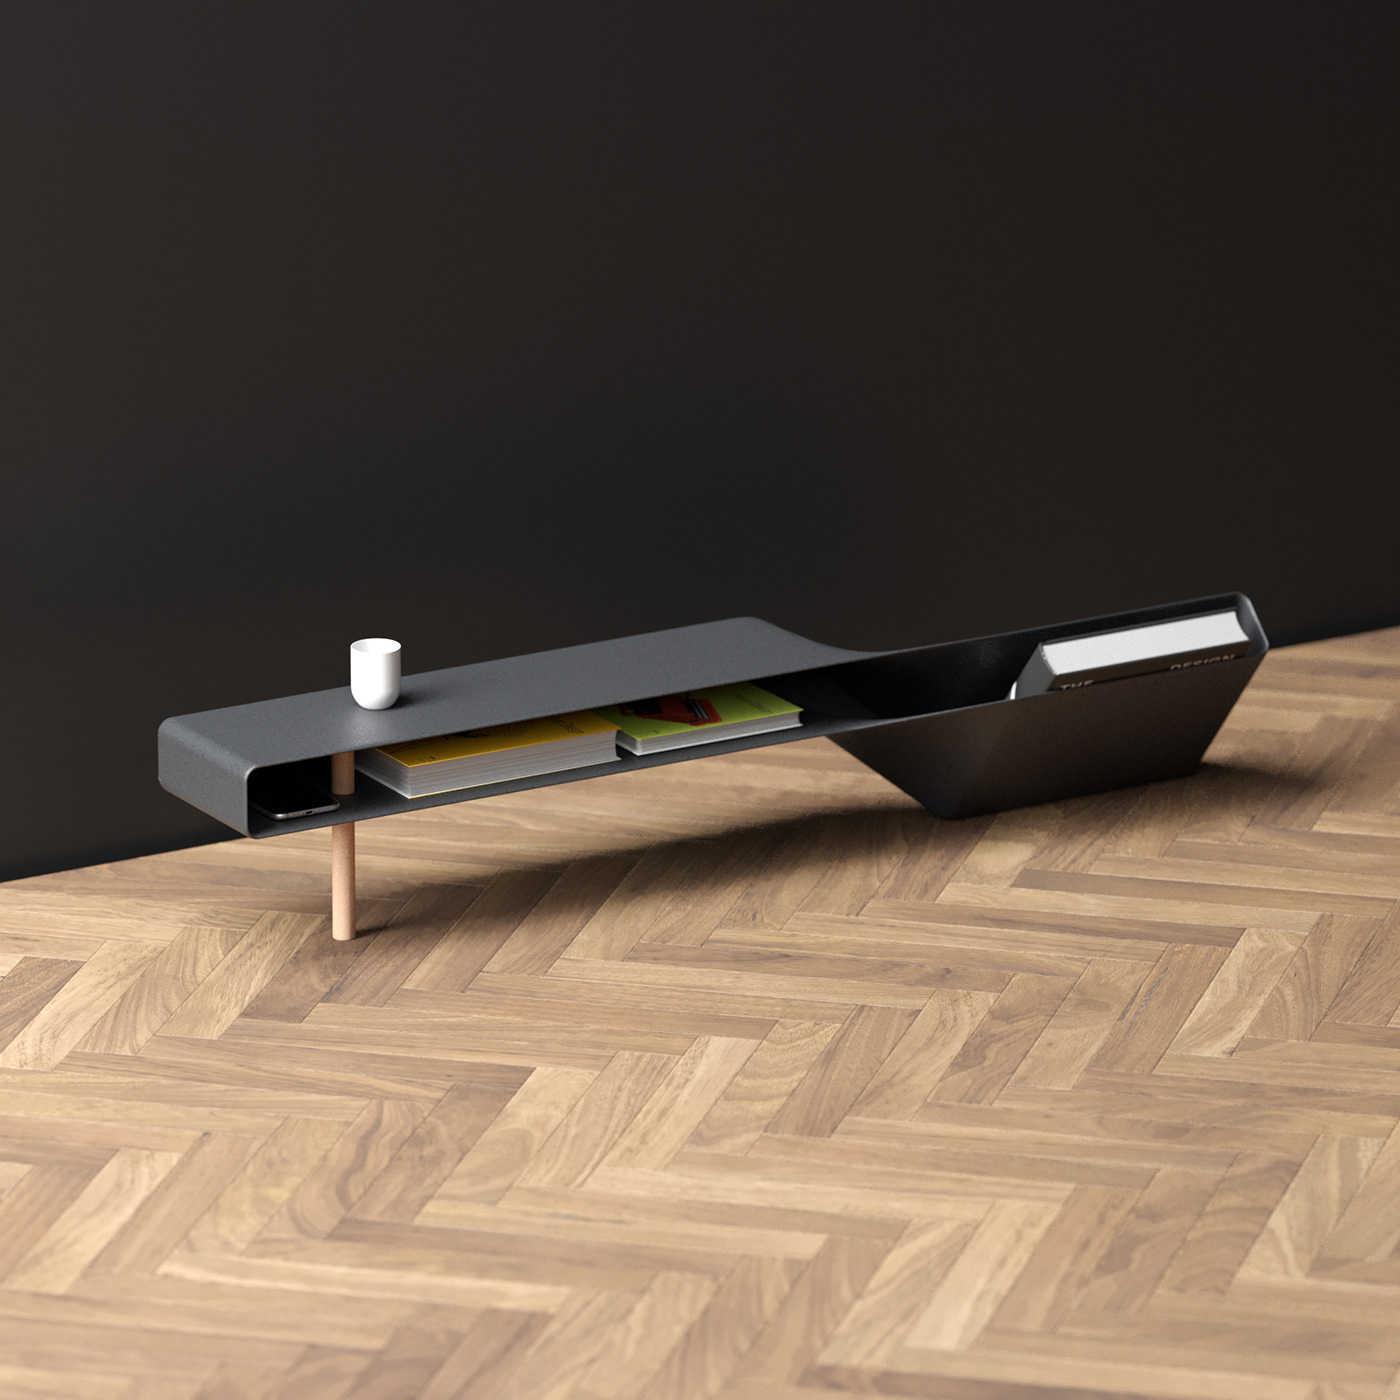 aluminium architecture design furniture industrial design  metal METALFURNITURE product table wood